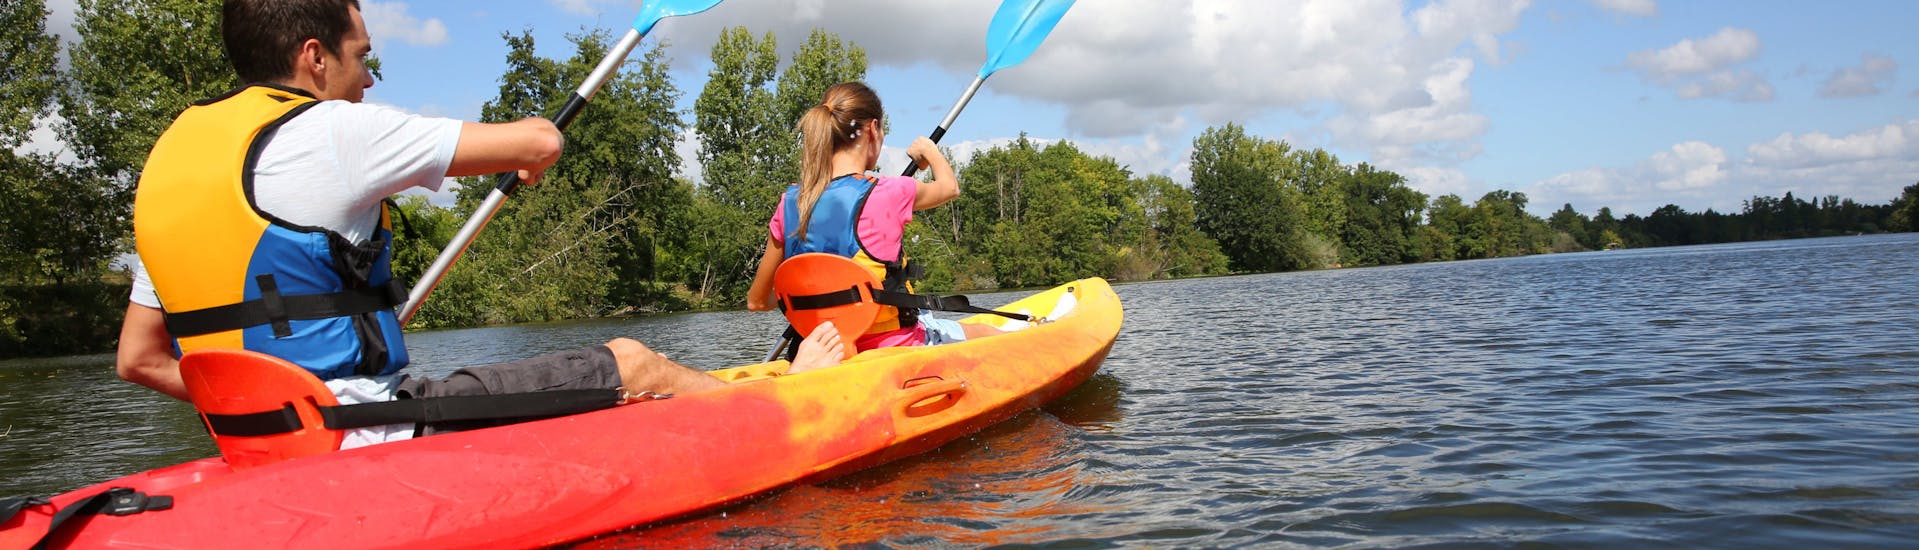 Kayak y piragua para expertos en Chalonnes-sur-Loire - Loire River.